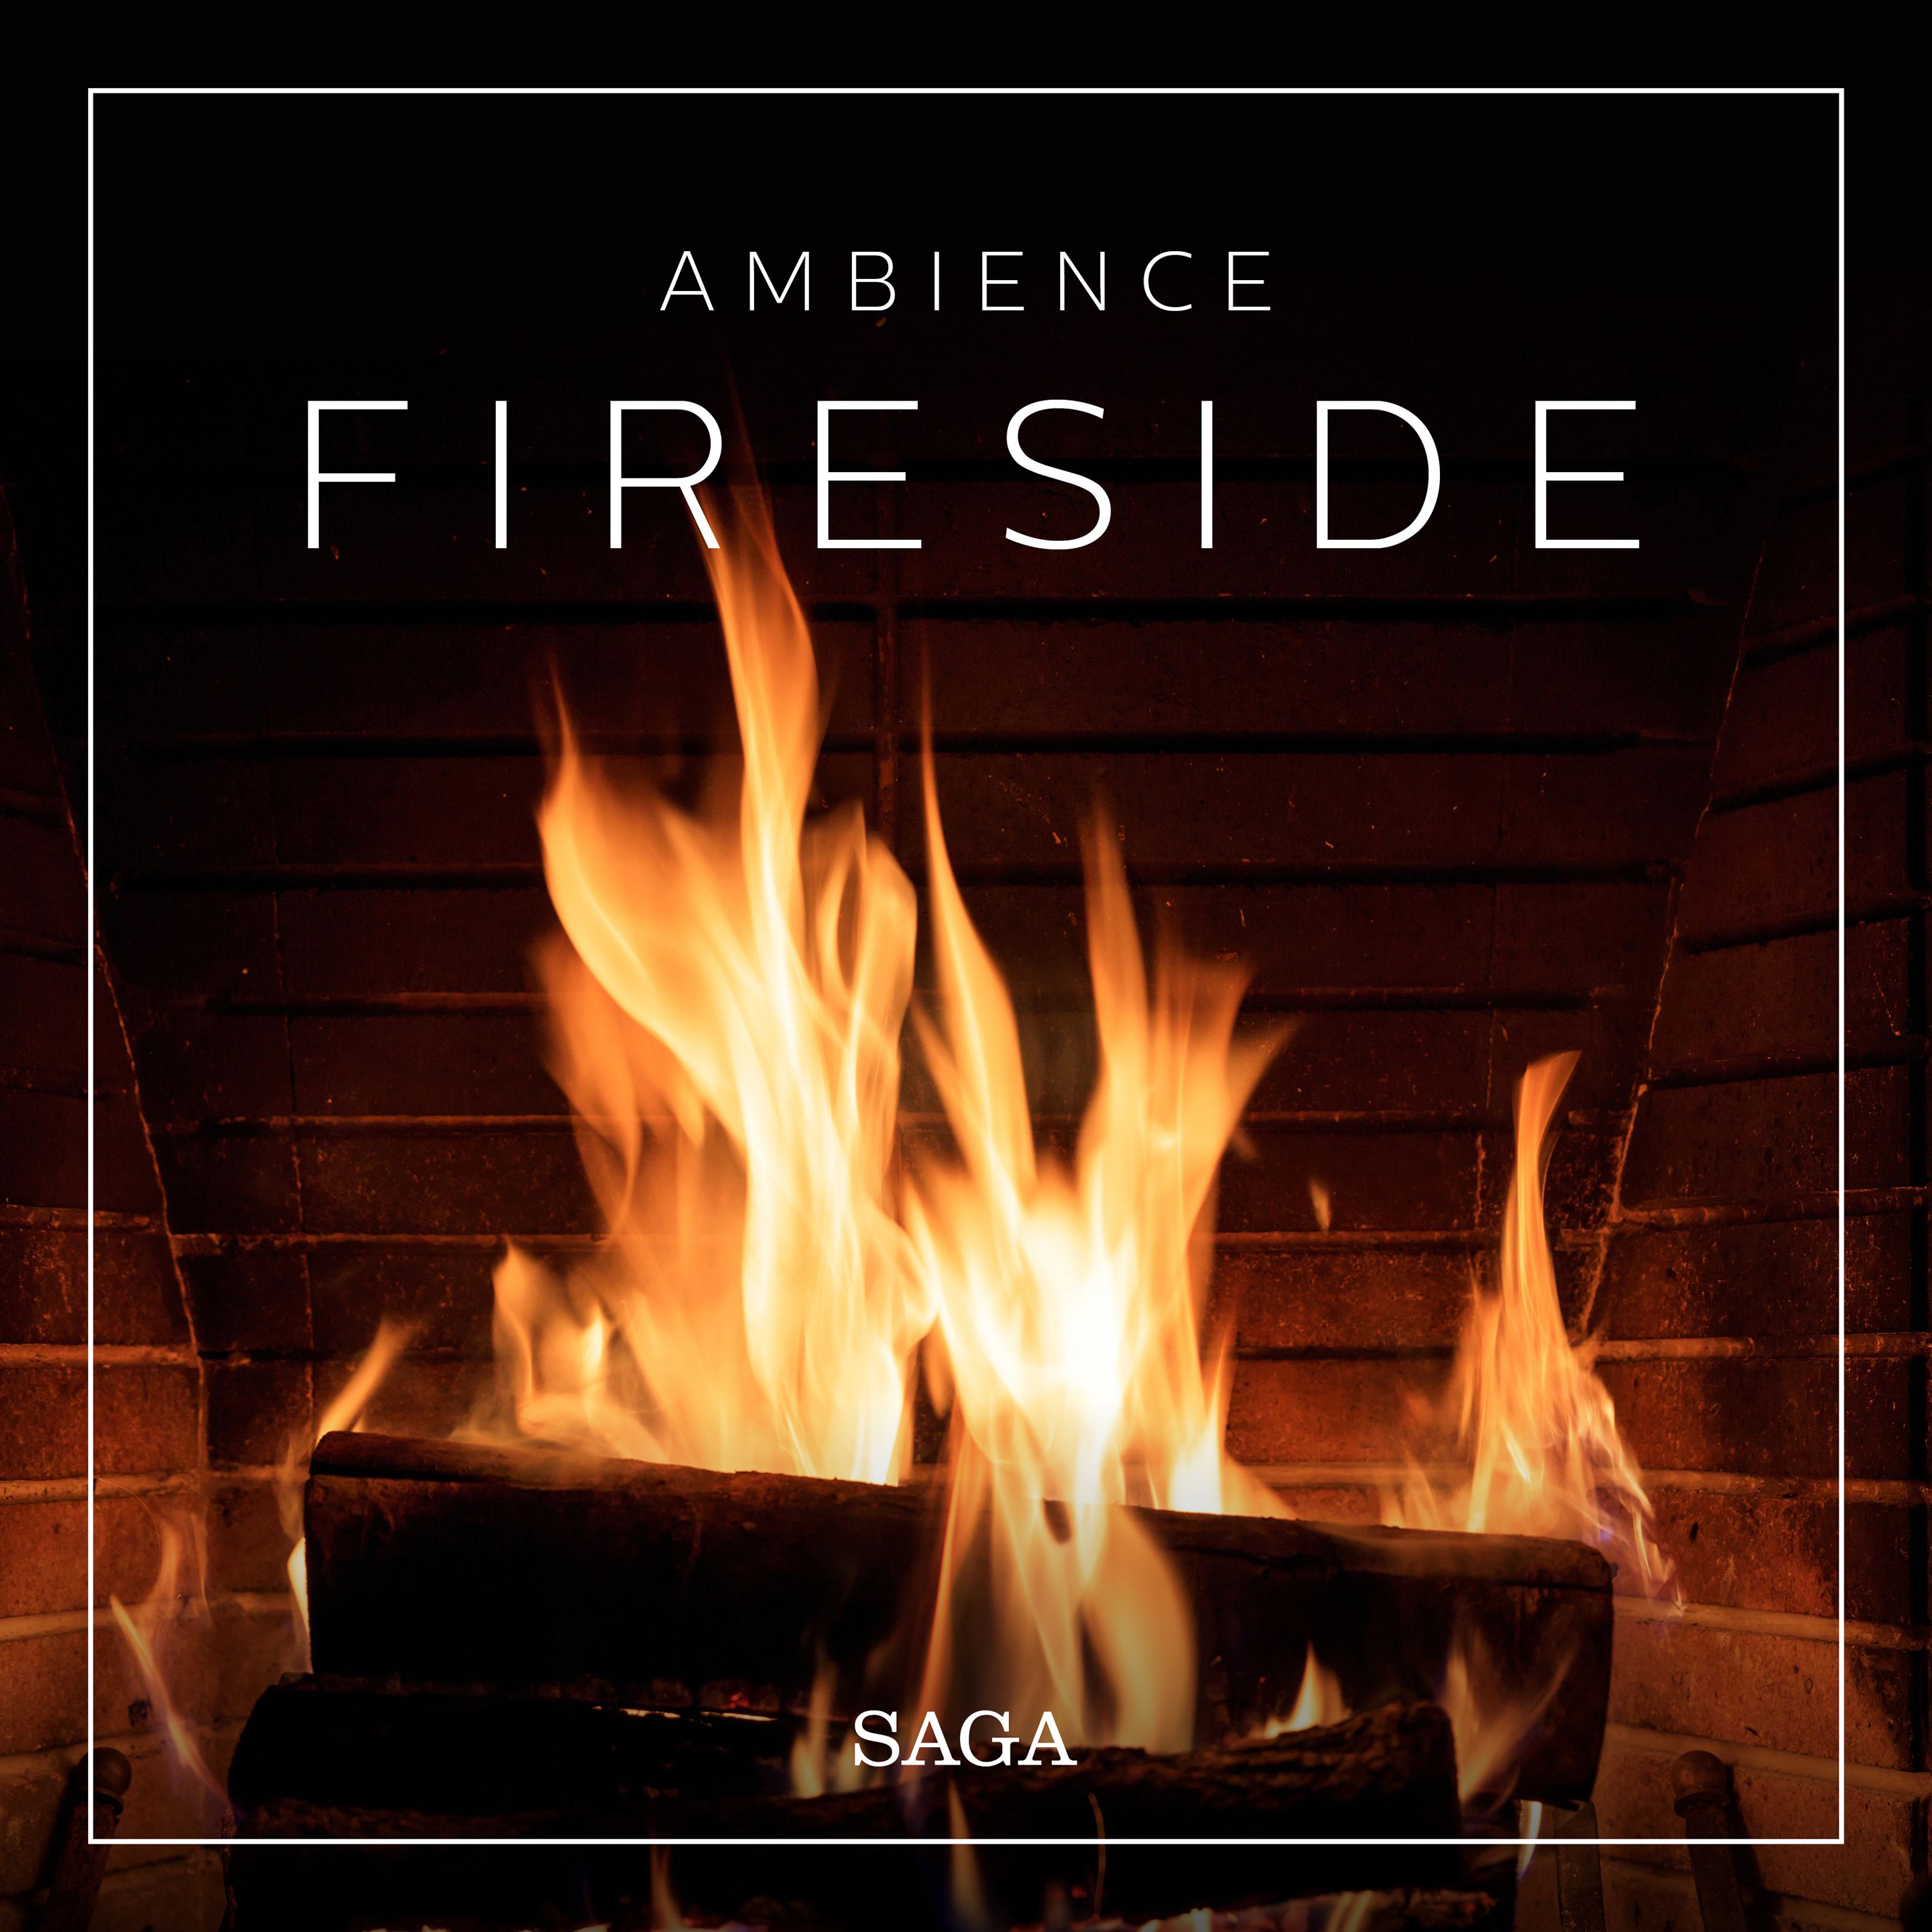 Ambience - Fireside, ljudbok av Rasmus Broe